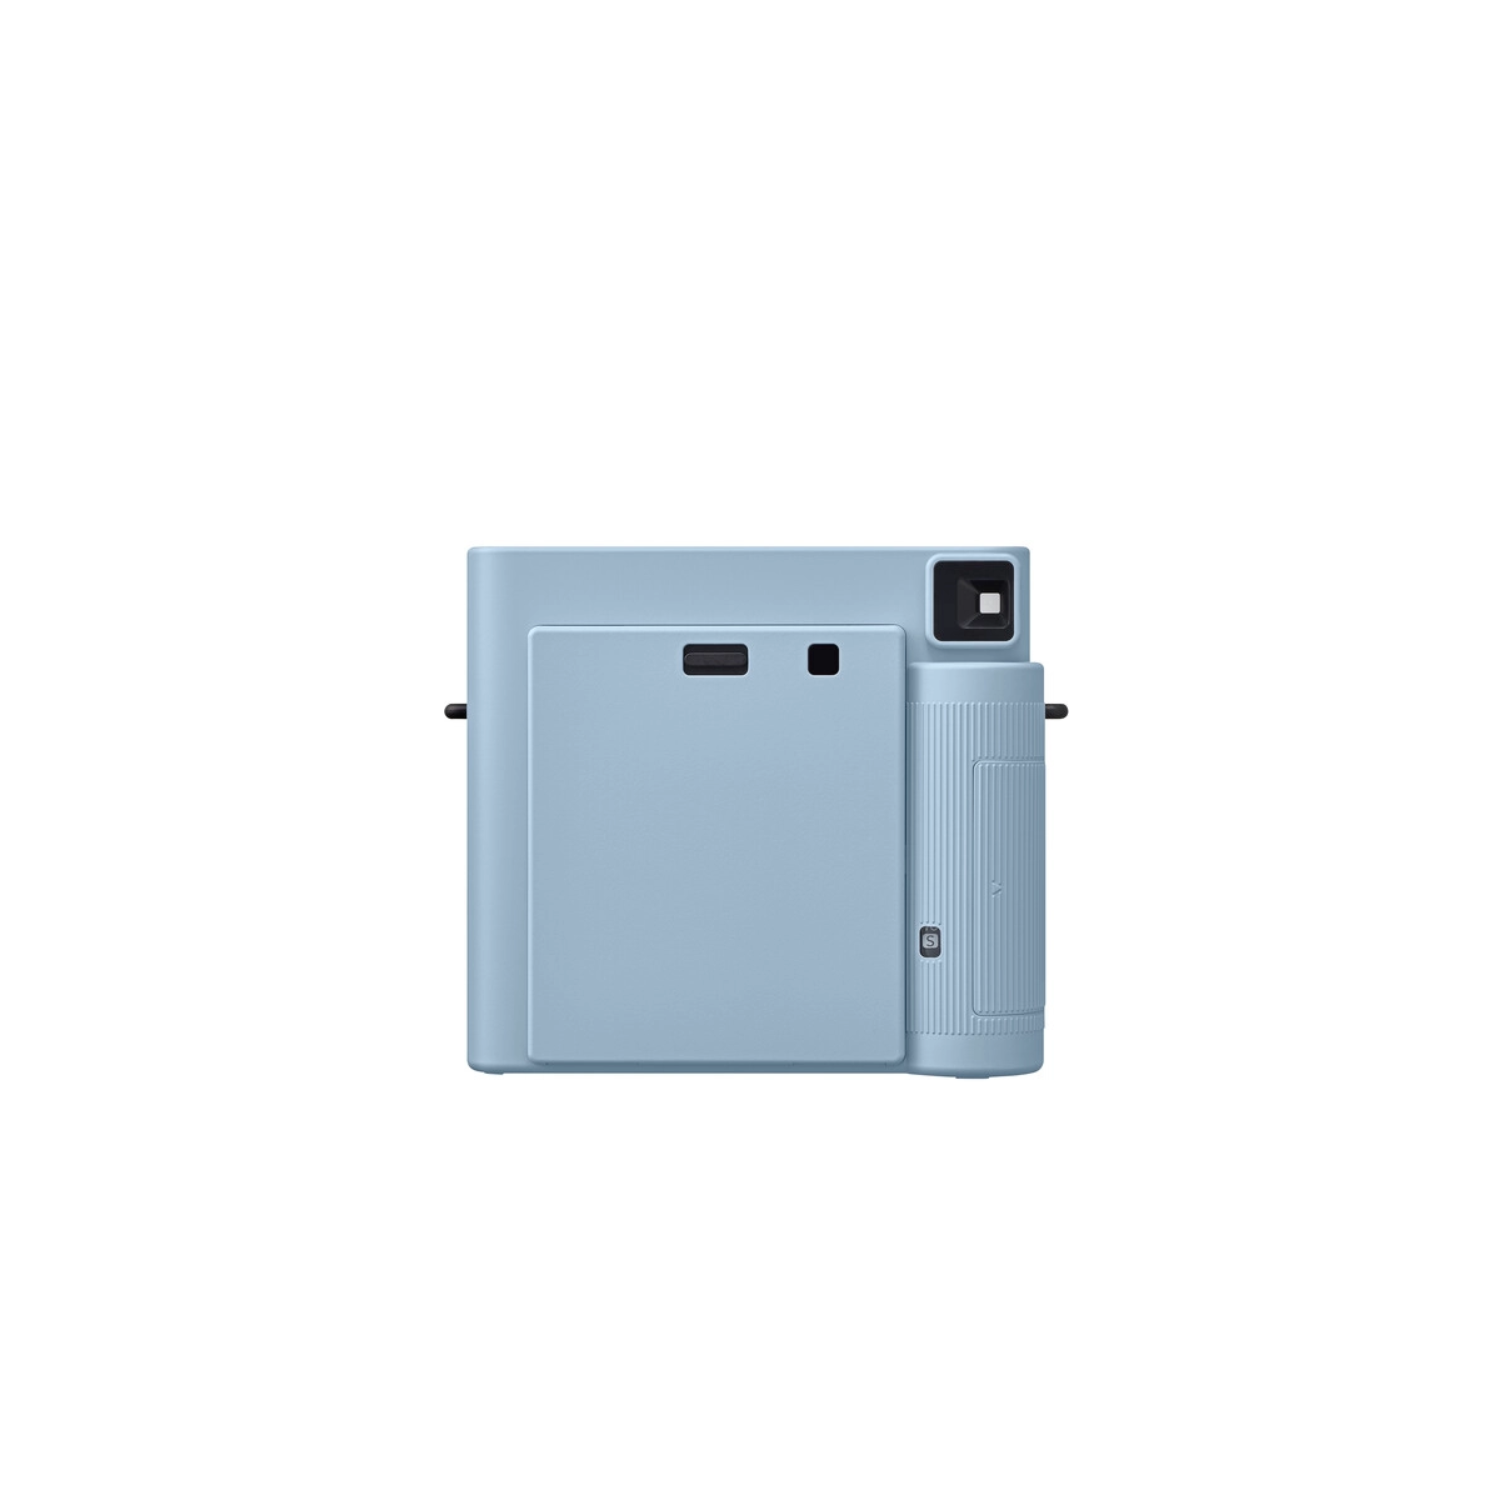 FUJIFILM Instax Square SQ1 Instant Camera - Glacier Blue 600021803